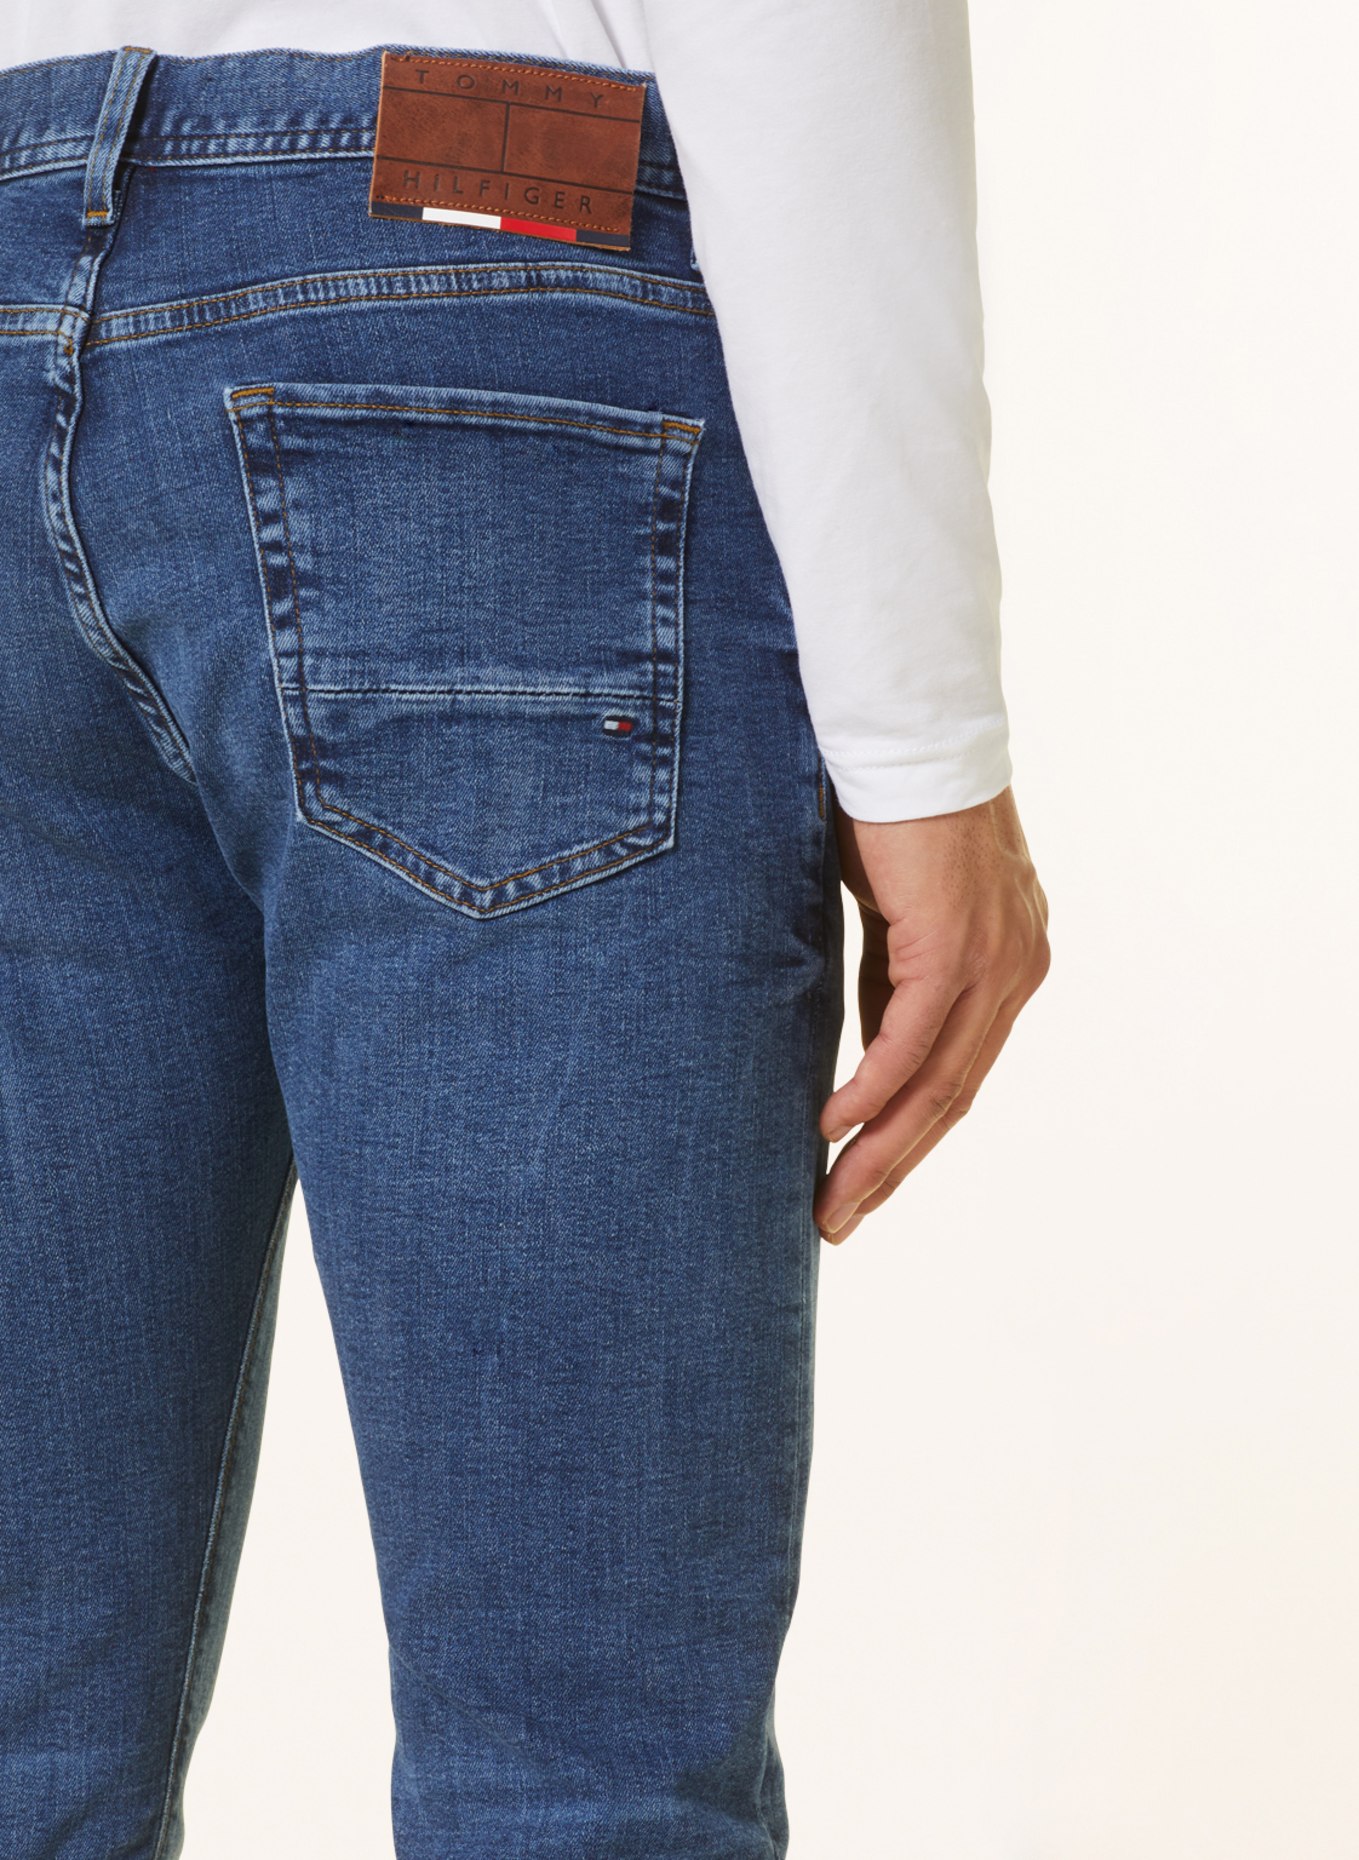 TOMMY HILFIGER Jeans BLEECKER Slim Fit, Farbe: 1C4 Oregon Indigo (Bild 6)